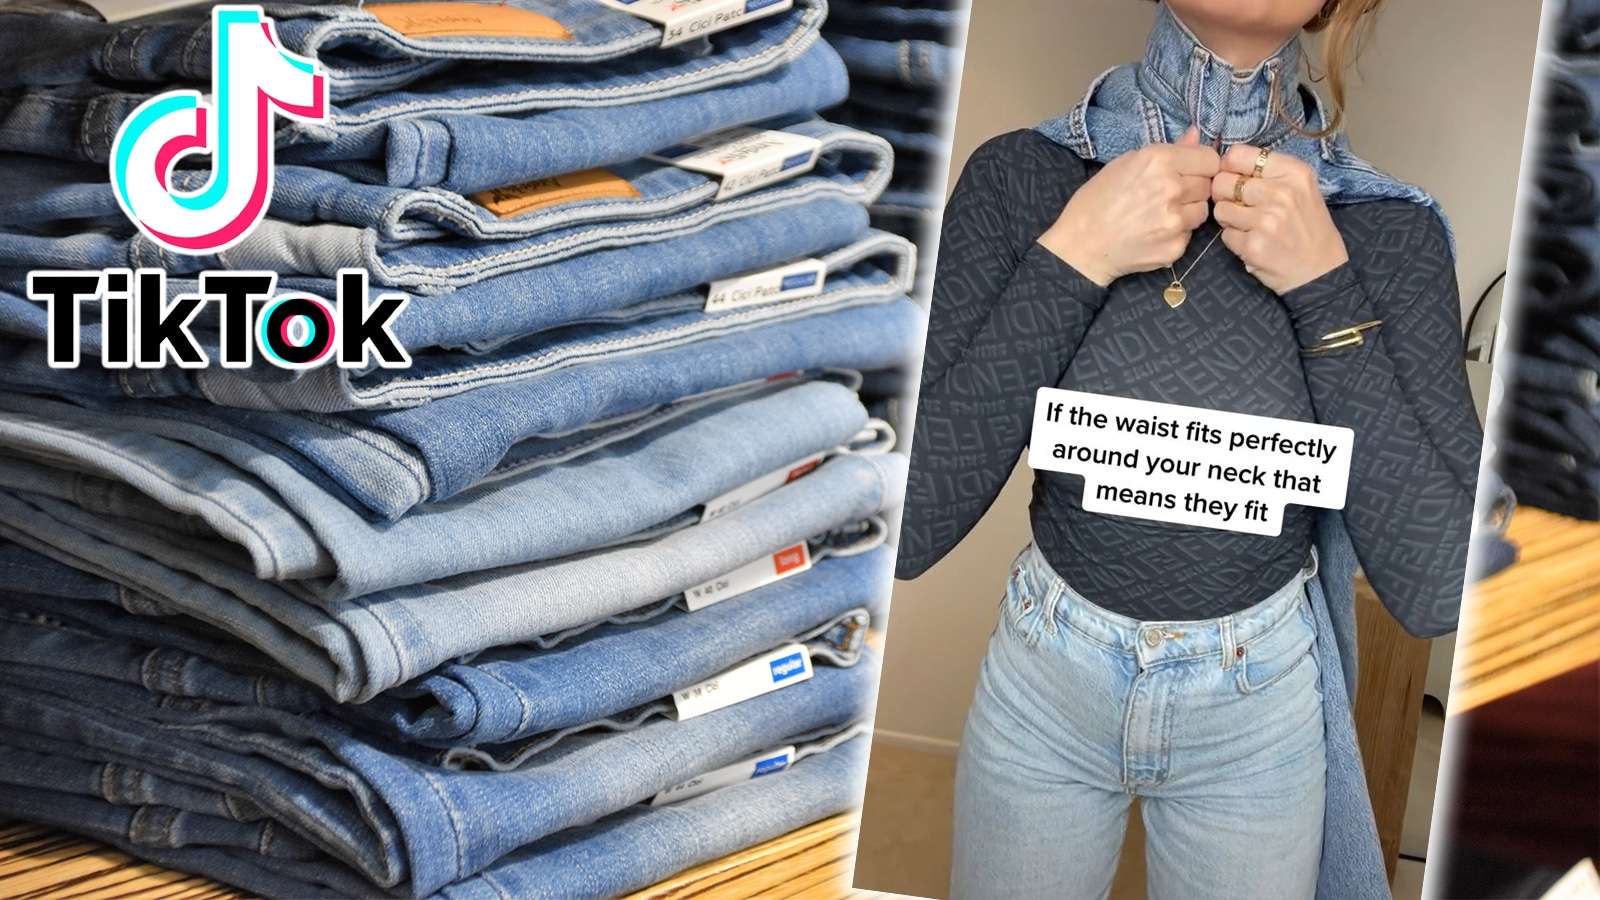 Viral jeans hack takes over tiktok